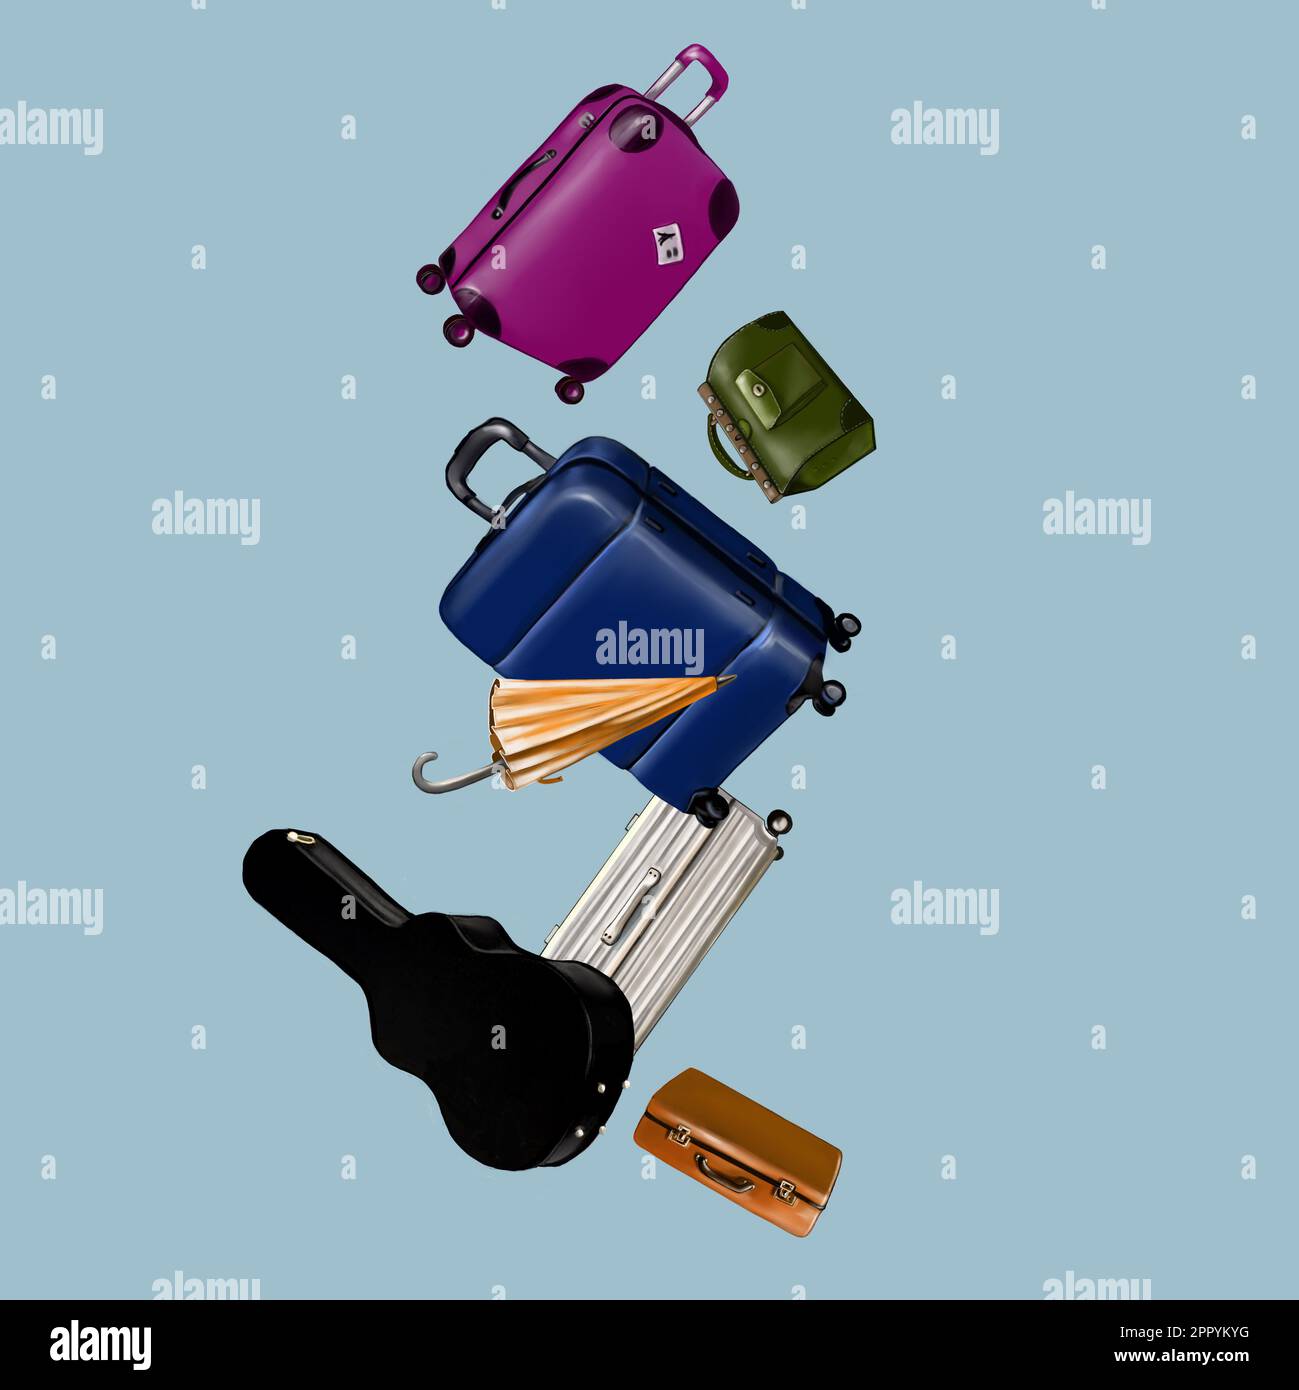 Gepäck, Koffer, Taschen, Korb, Gitarrenkoffer, Schirm Stockfoto